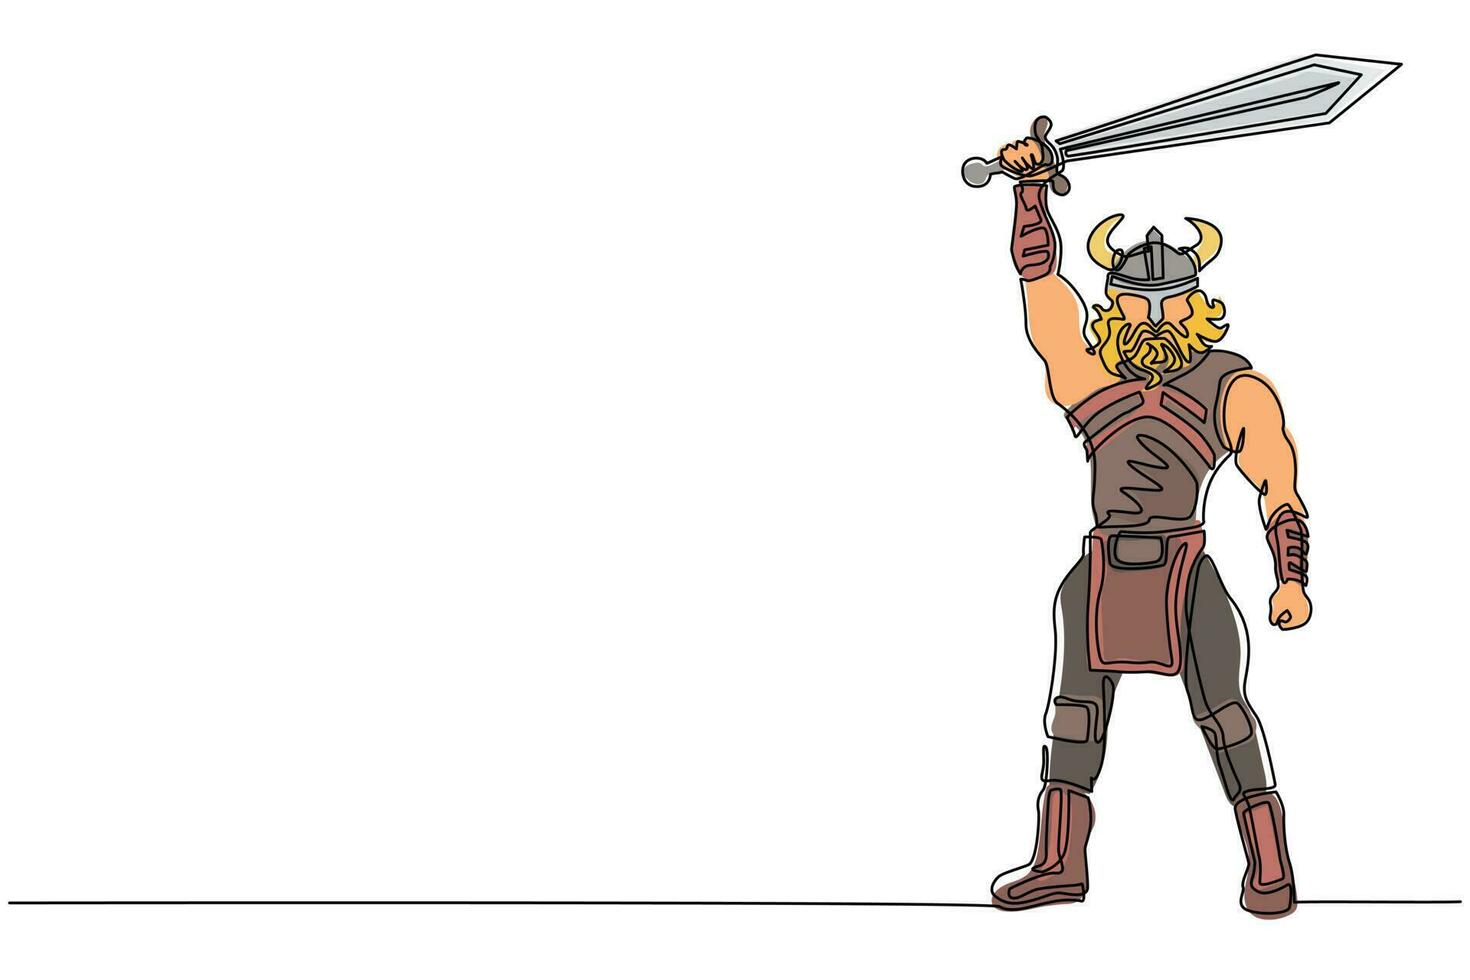 enda kontinuerlig linjeteckning nordisk man håller svärdet i luften. vektor av krigare bär viking krigsrustning. karaktär från hednisk och skandinavisk mytologi. en linje rita design illustration